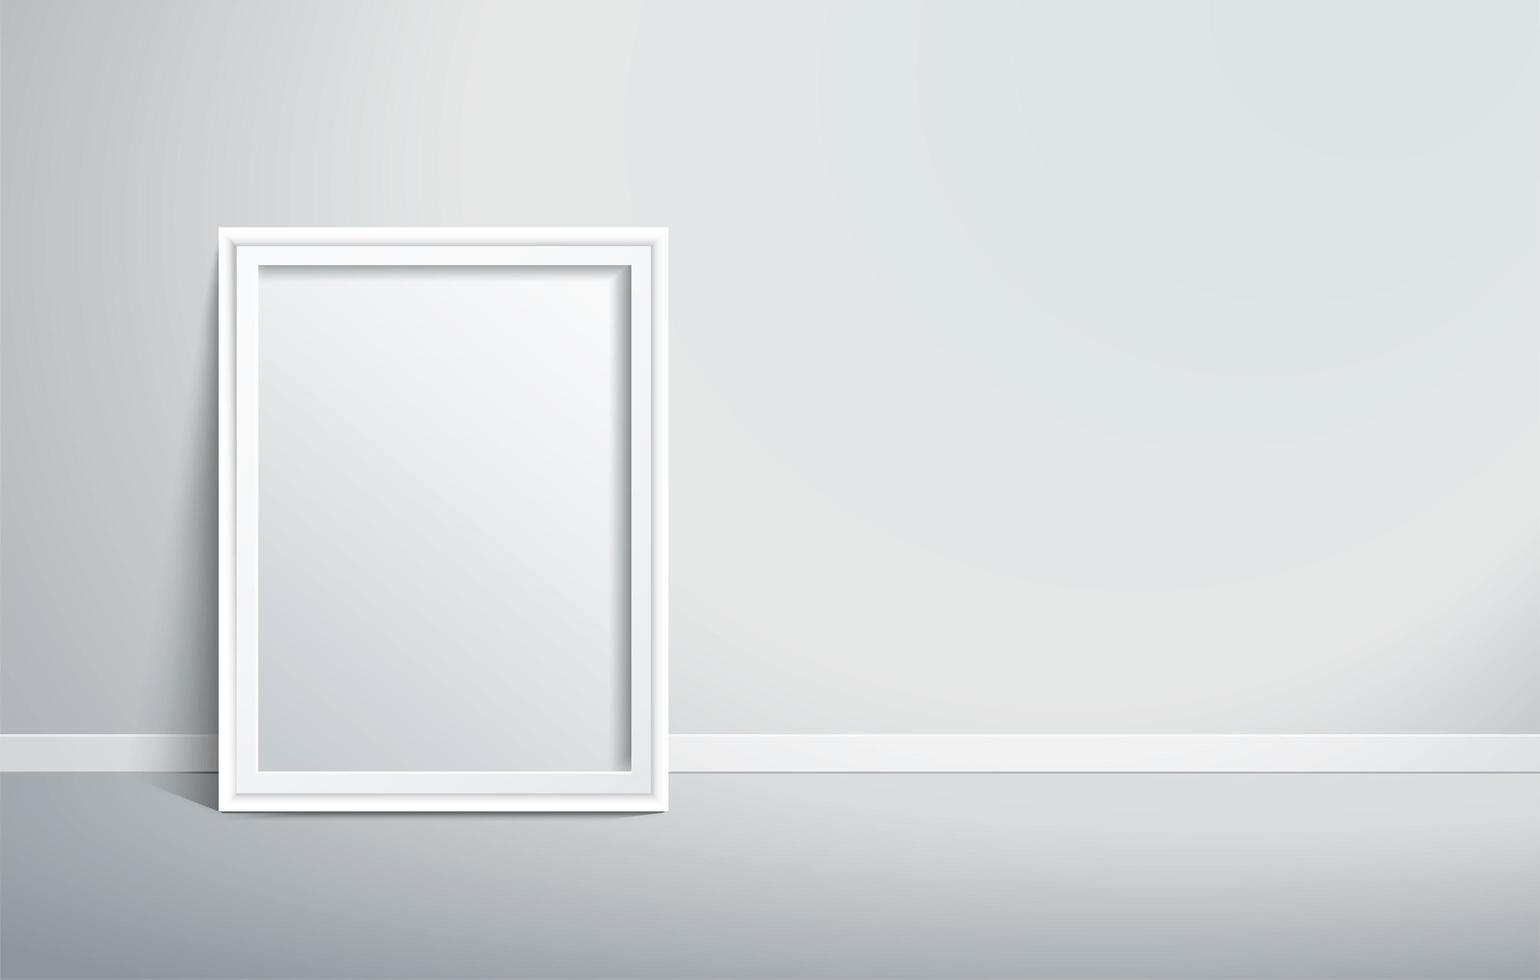 witte rand afbeeldingsframe op de muur vector